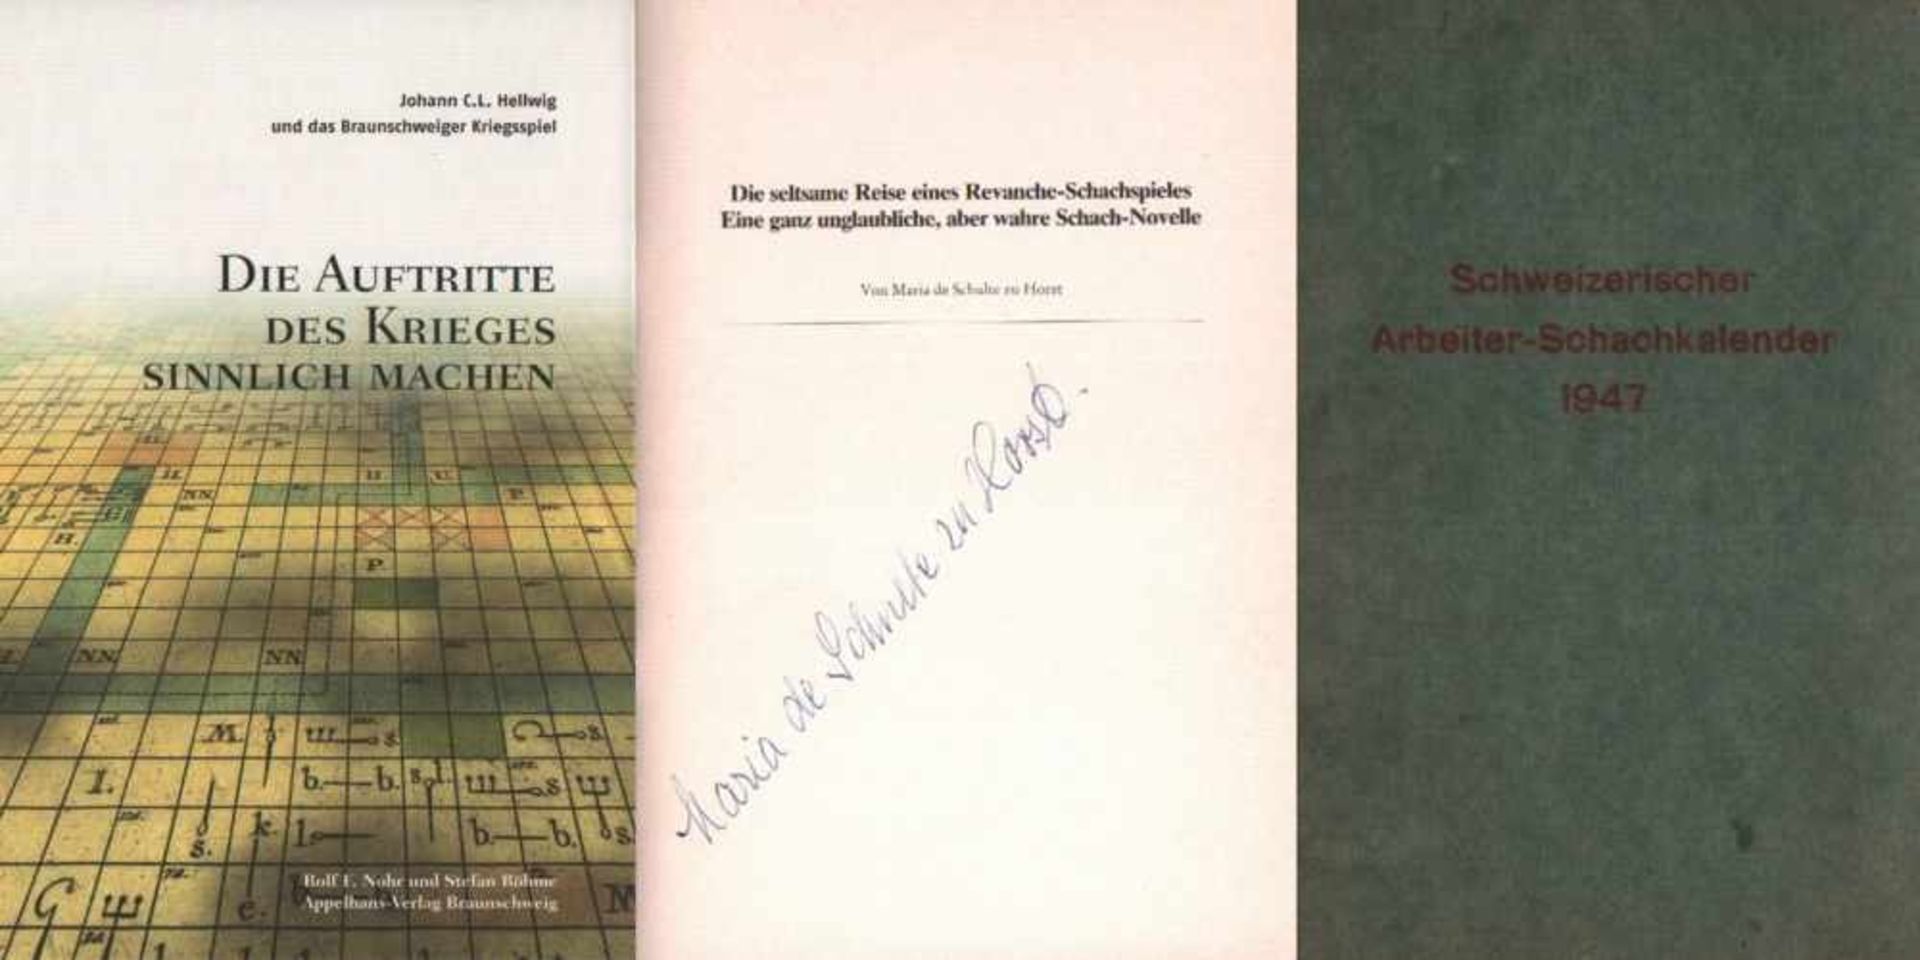 Nohr, Rolf F. und S. Böhme.Johann C. L. Hellwig und das Braunschweiger Kriegsspiel. Die Auftritte